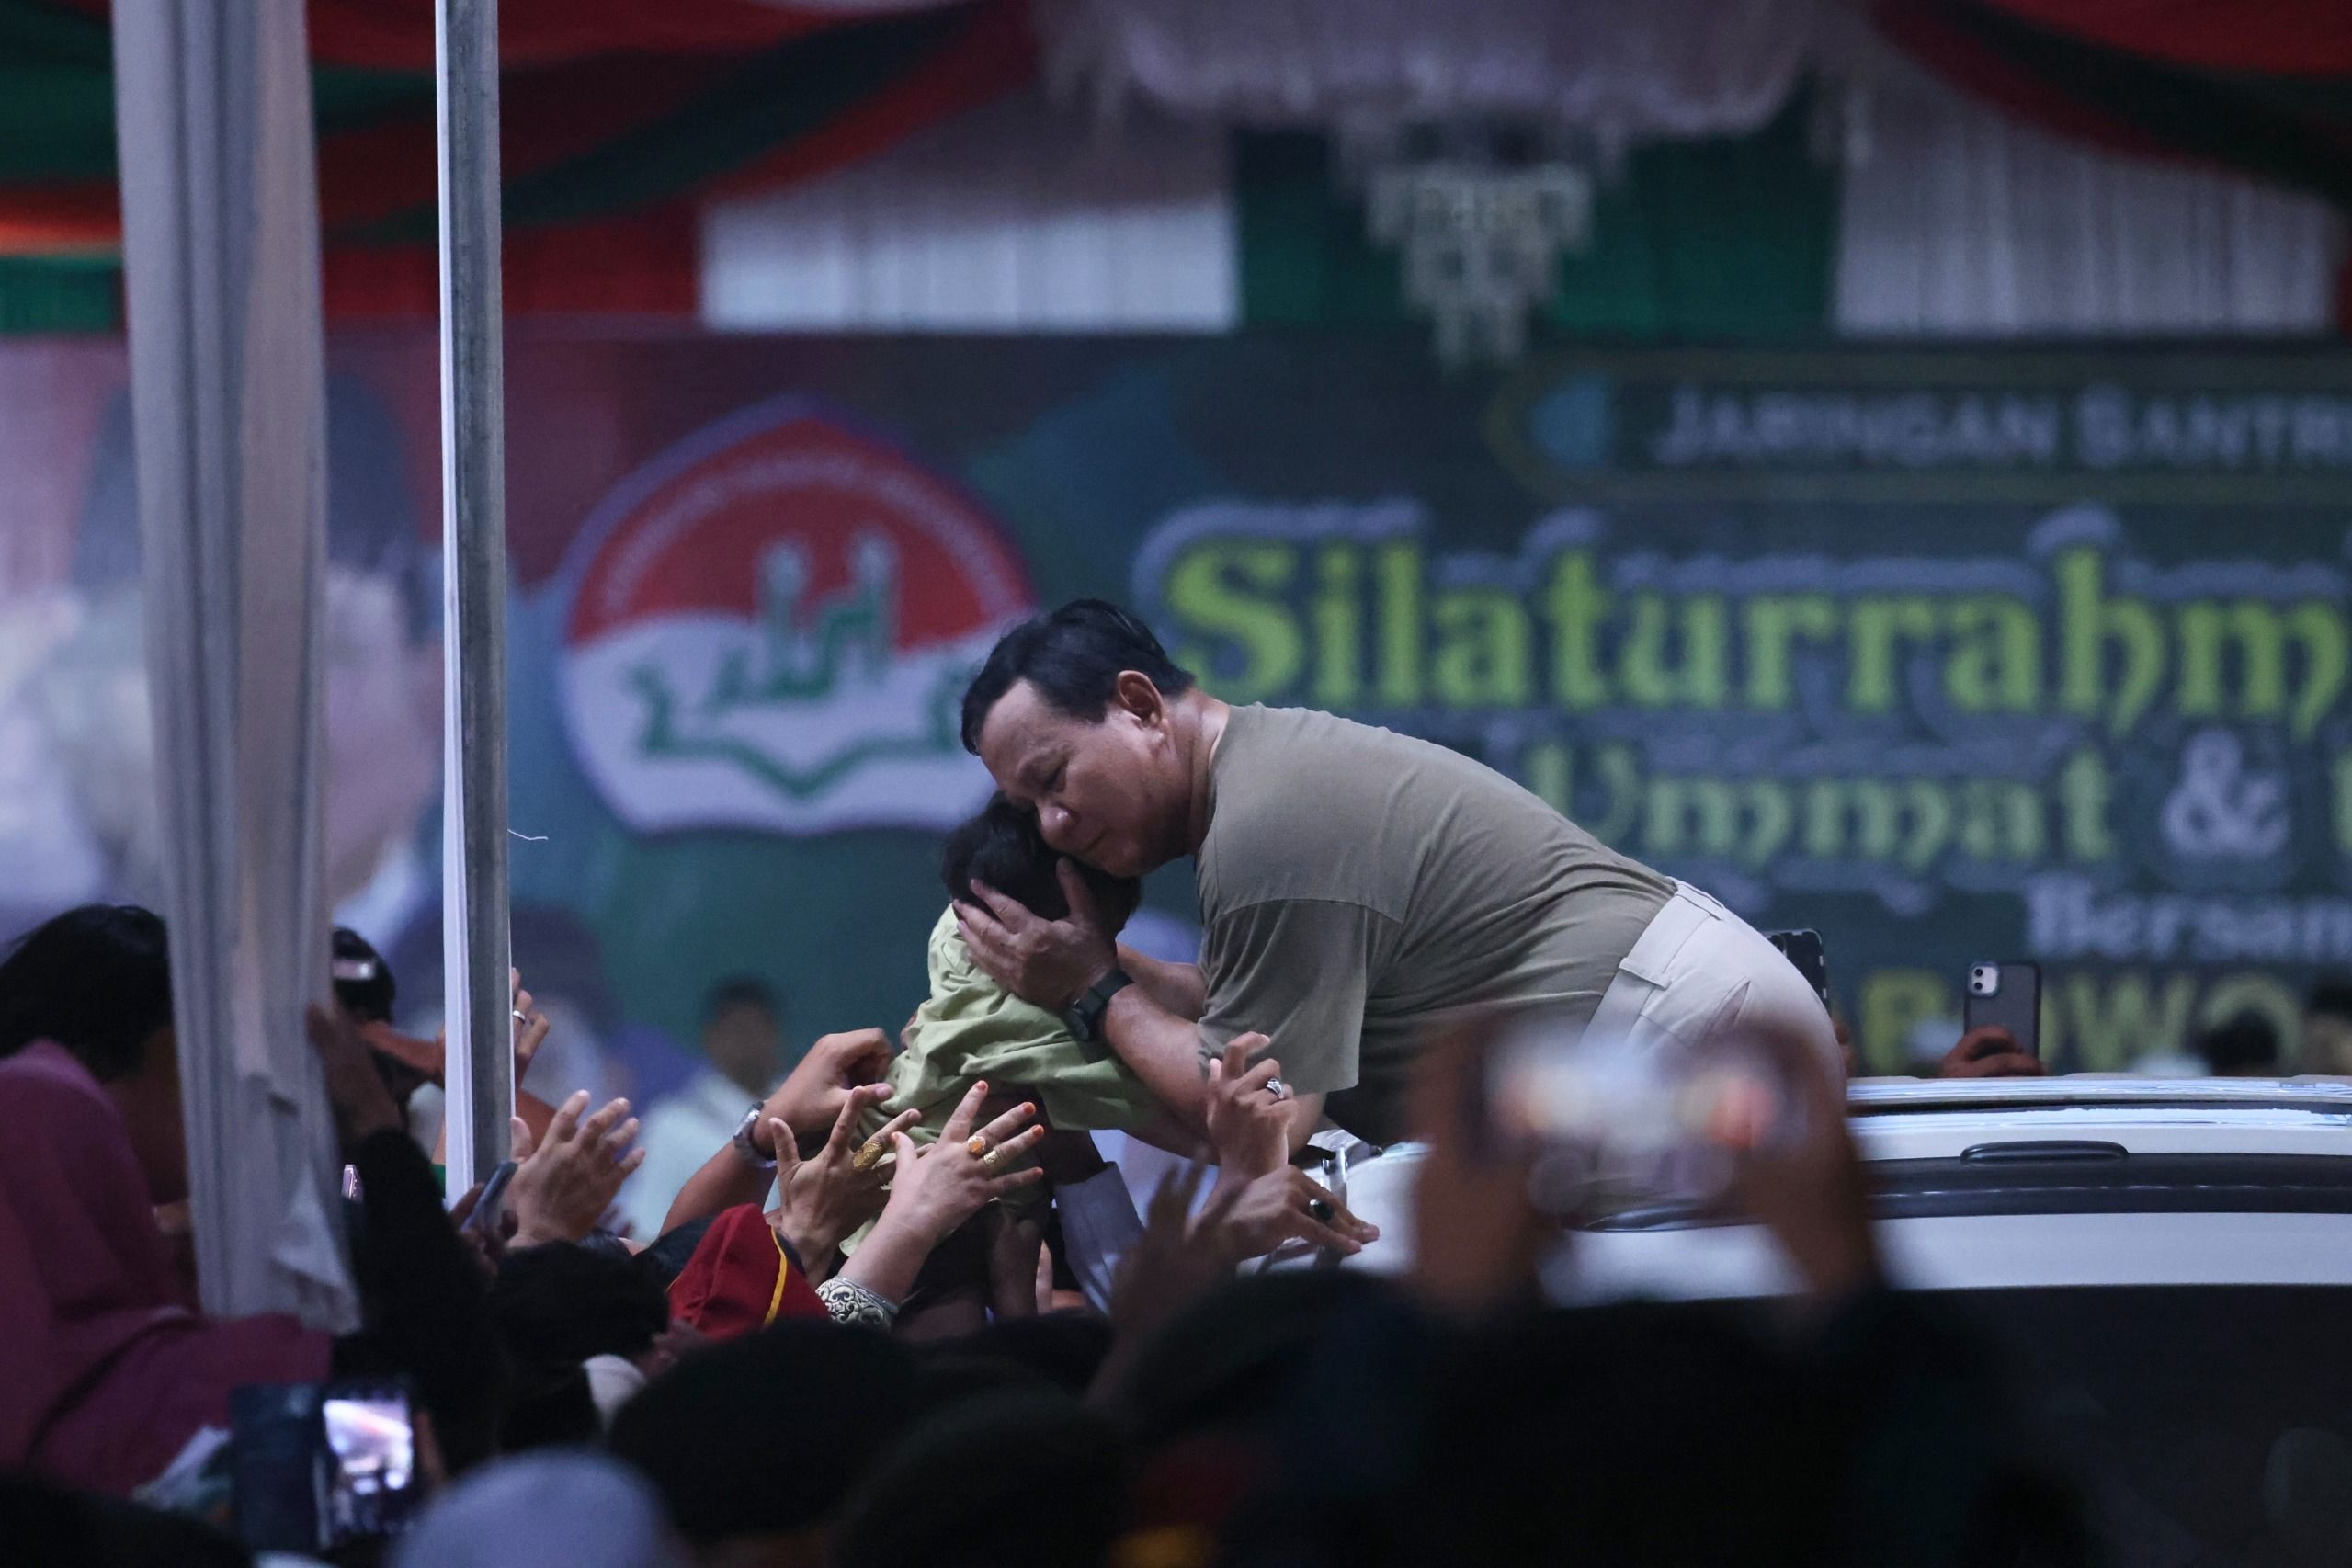 Pengamat: Prabowo Posisikan Diri Terzalimi Diserang Saat Debat, Mirip SBY 